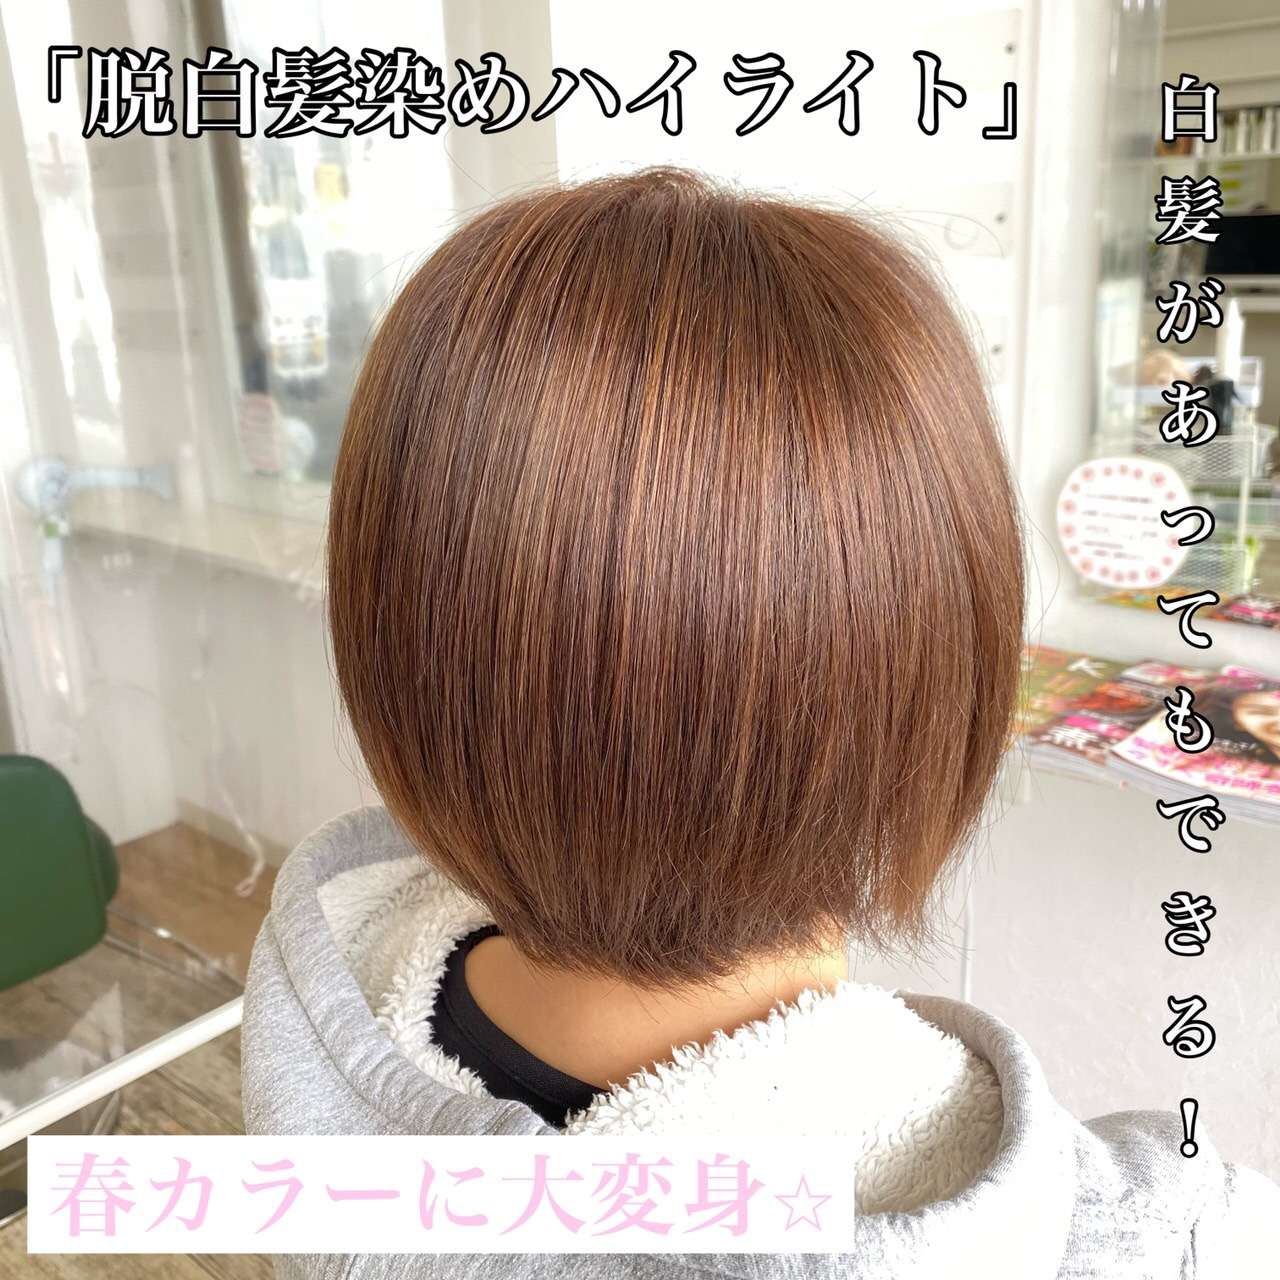 姫路市でオススメ白髪染め⭐︎「tripヘアメイク東山店.美容室」